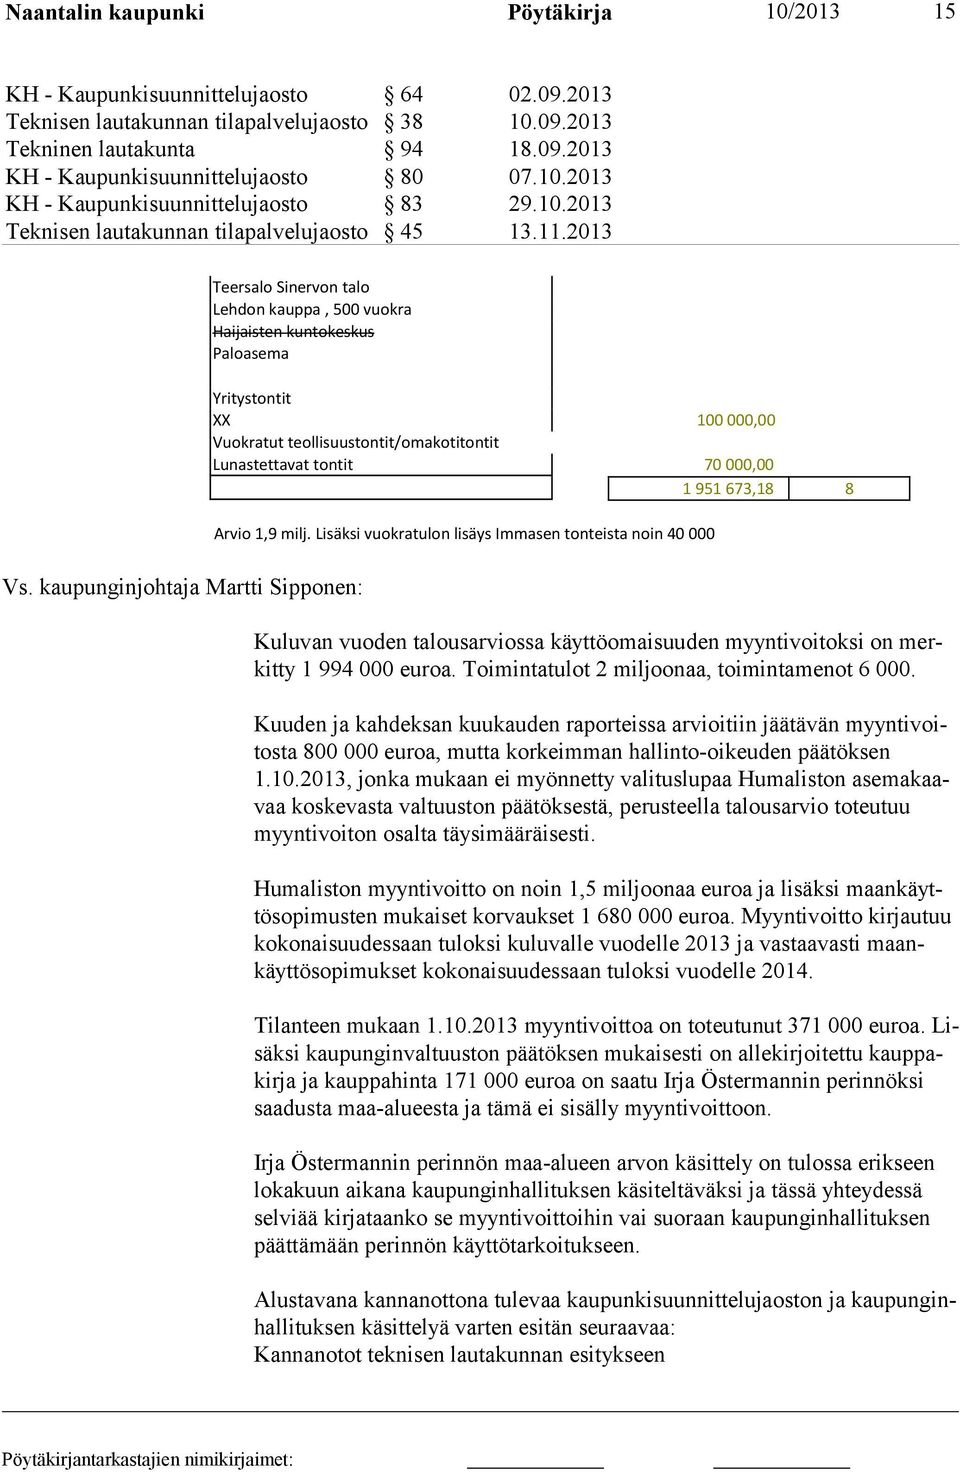 kaupunginjohtaja Martti Sipponen: Yritystontit XX 100 000,00 Vuokratut teollisuustontit/omakotitontit Lunastettavat tontit 70 000,00 1 951 673,18 8 Arvio 1,9 milj.